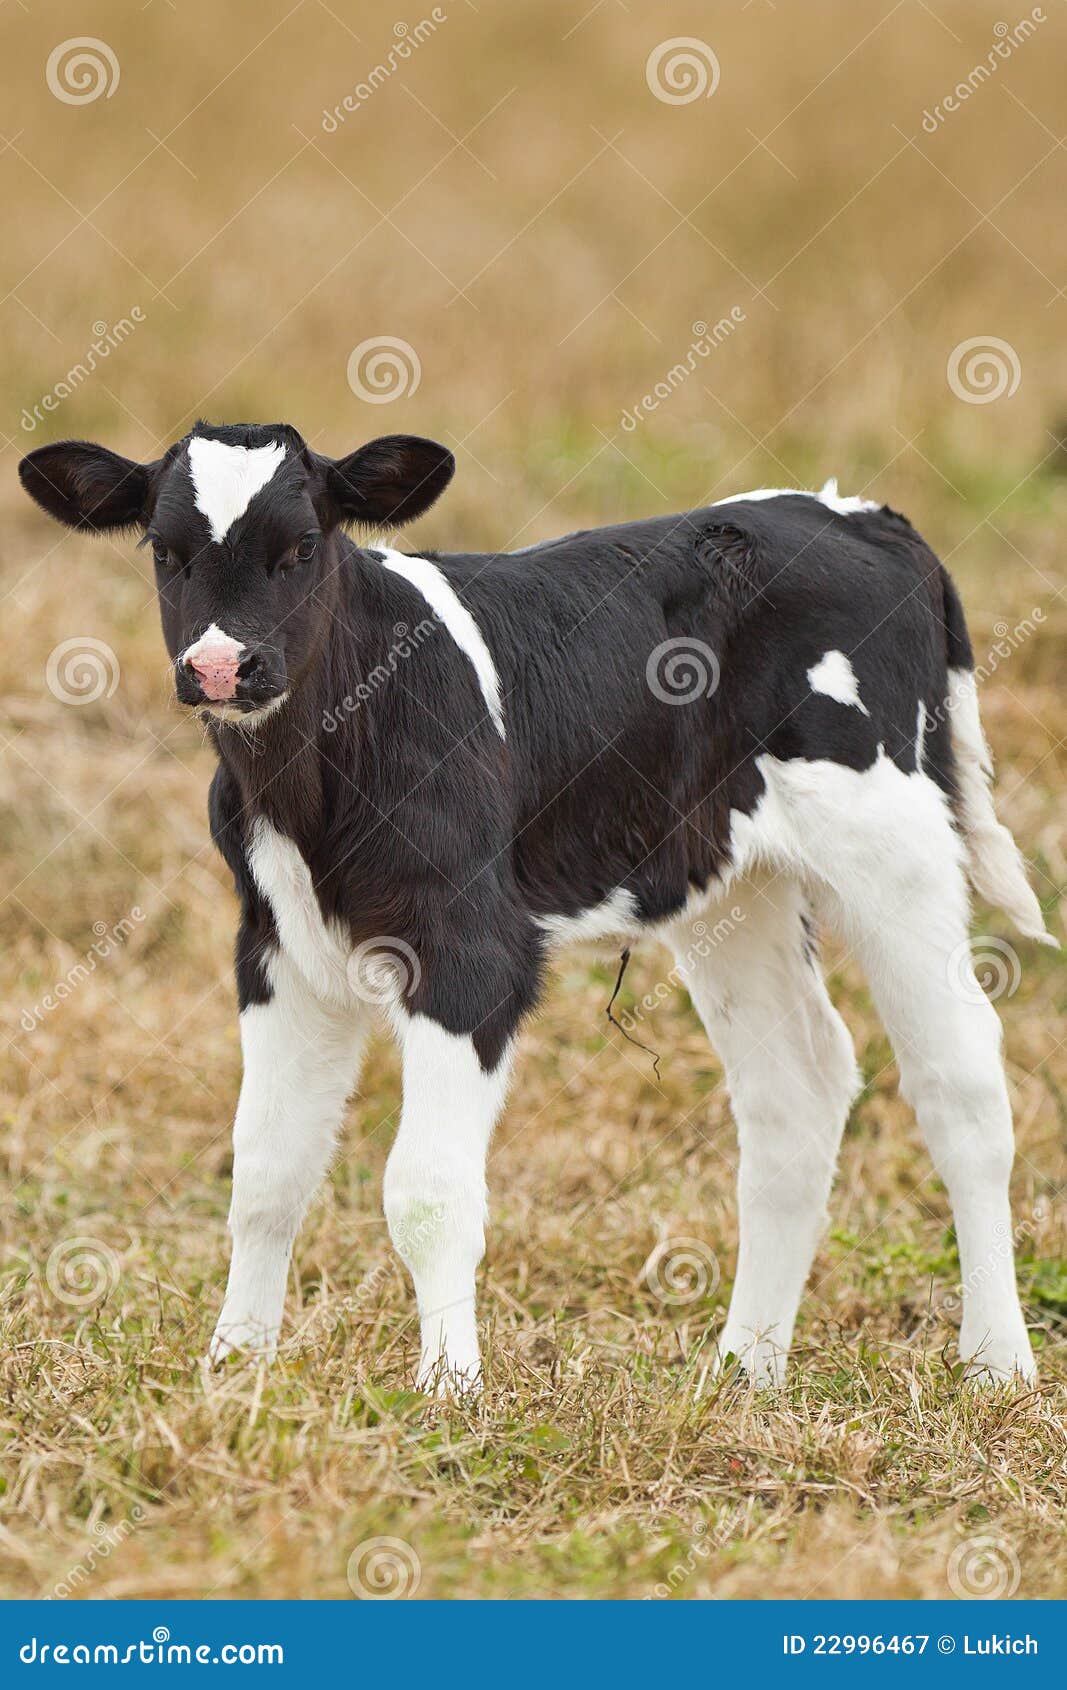 newborn calf